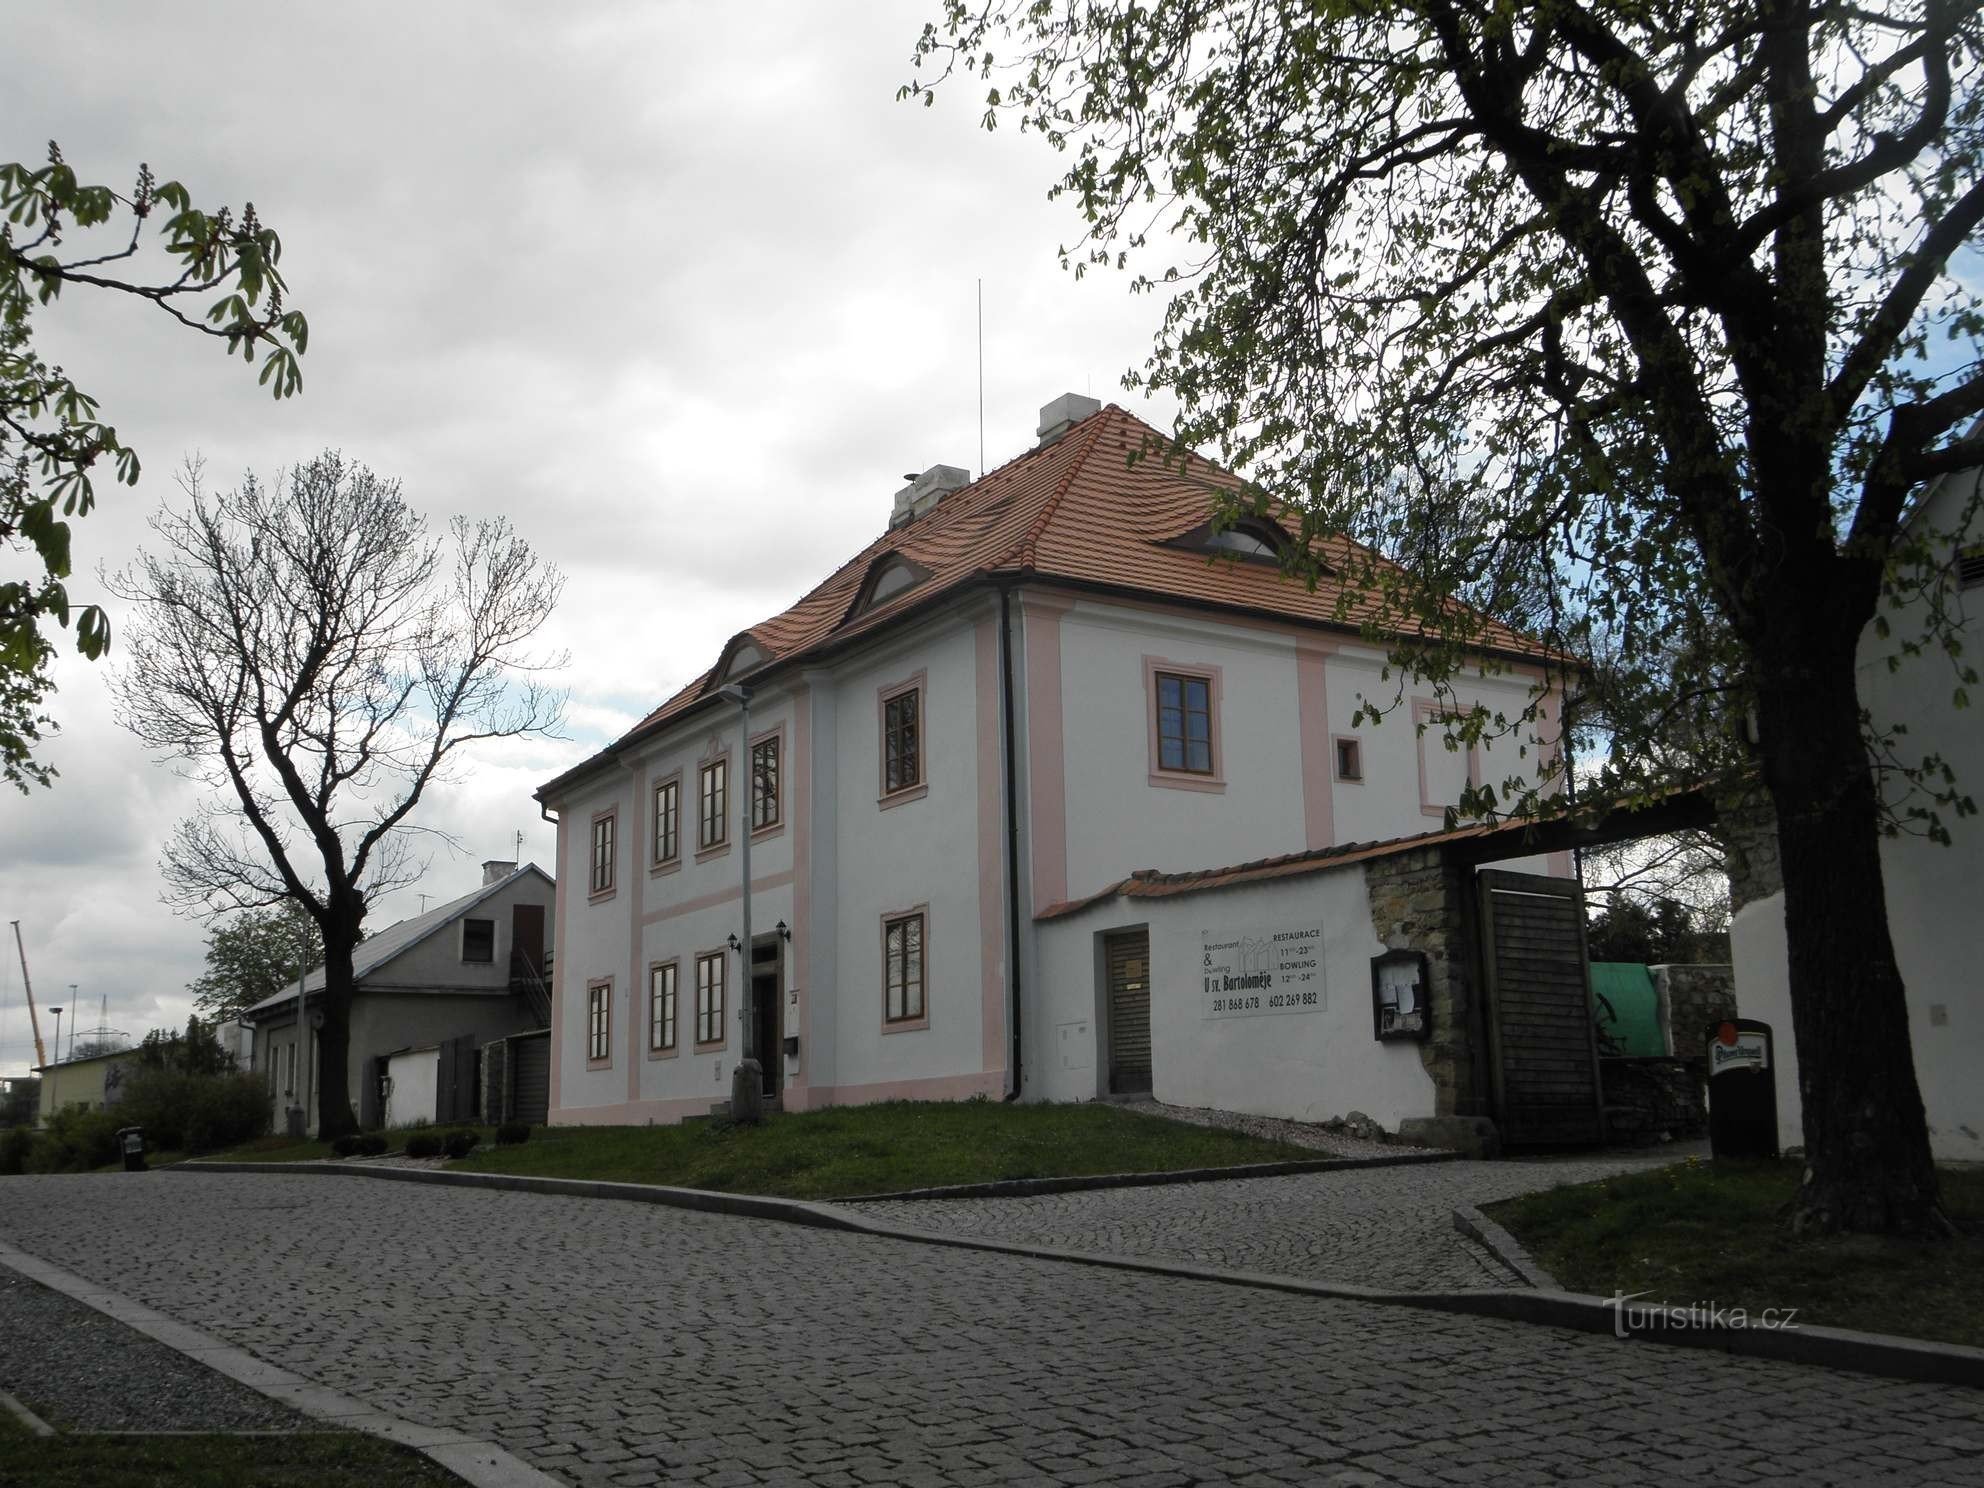 Župni dvor iz 18. stoljeća nasuprot crkve sv. Bartola - 25.4.2012.